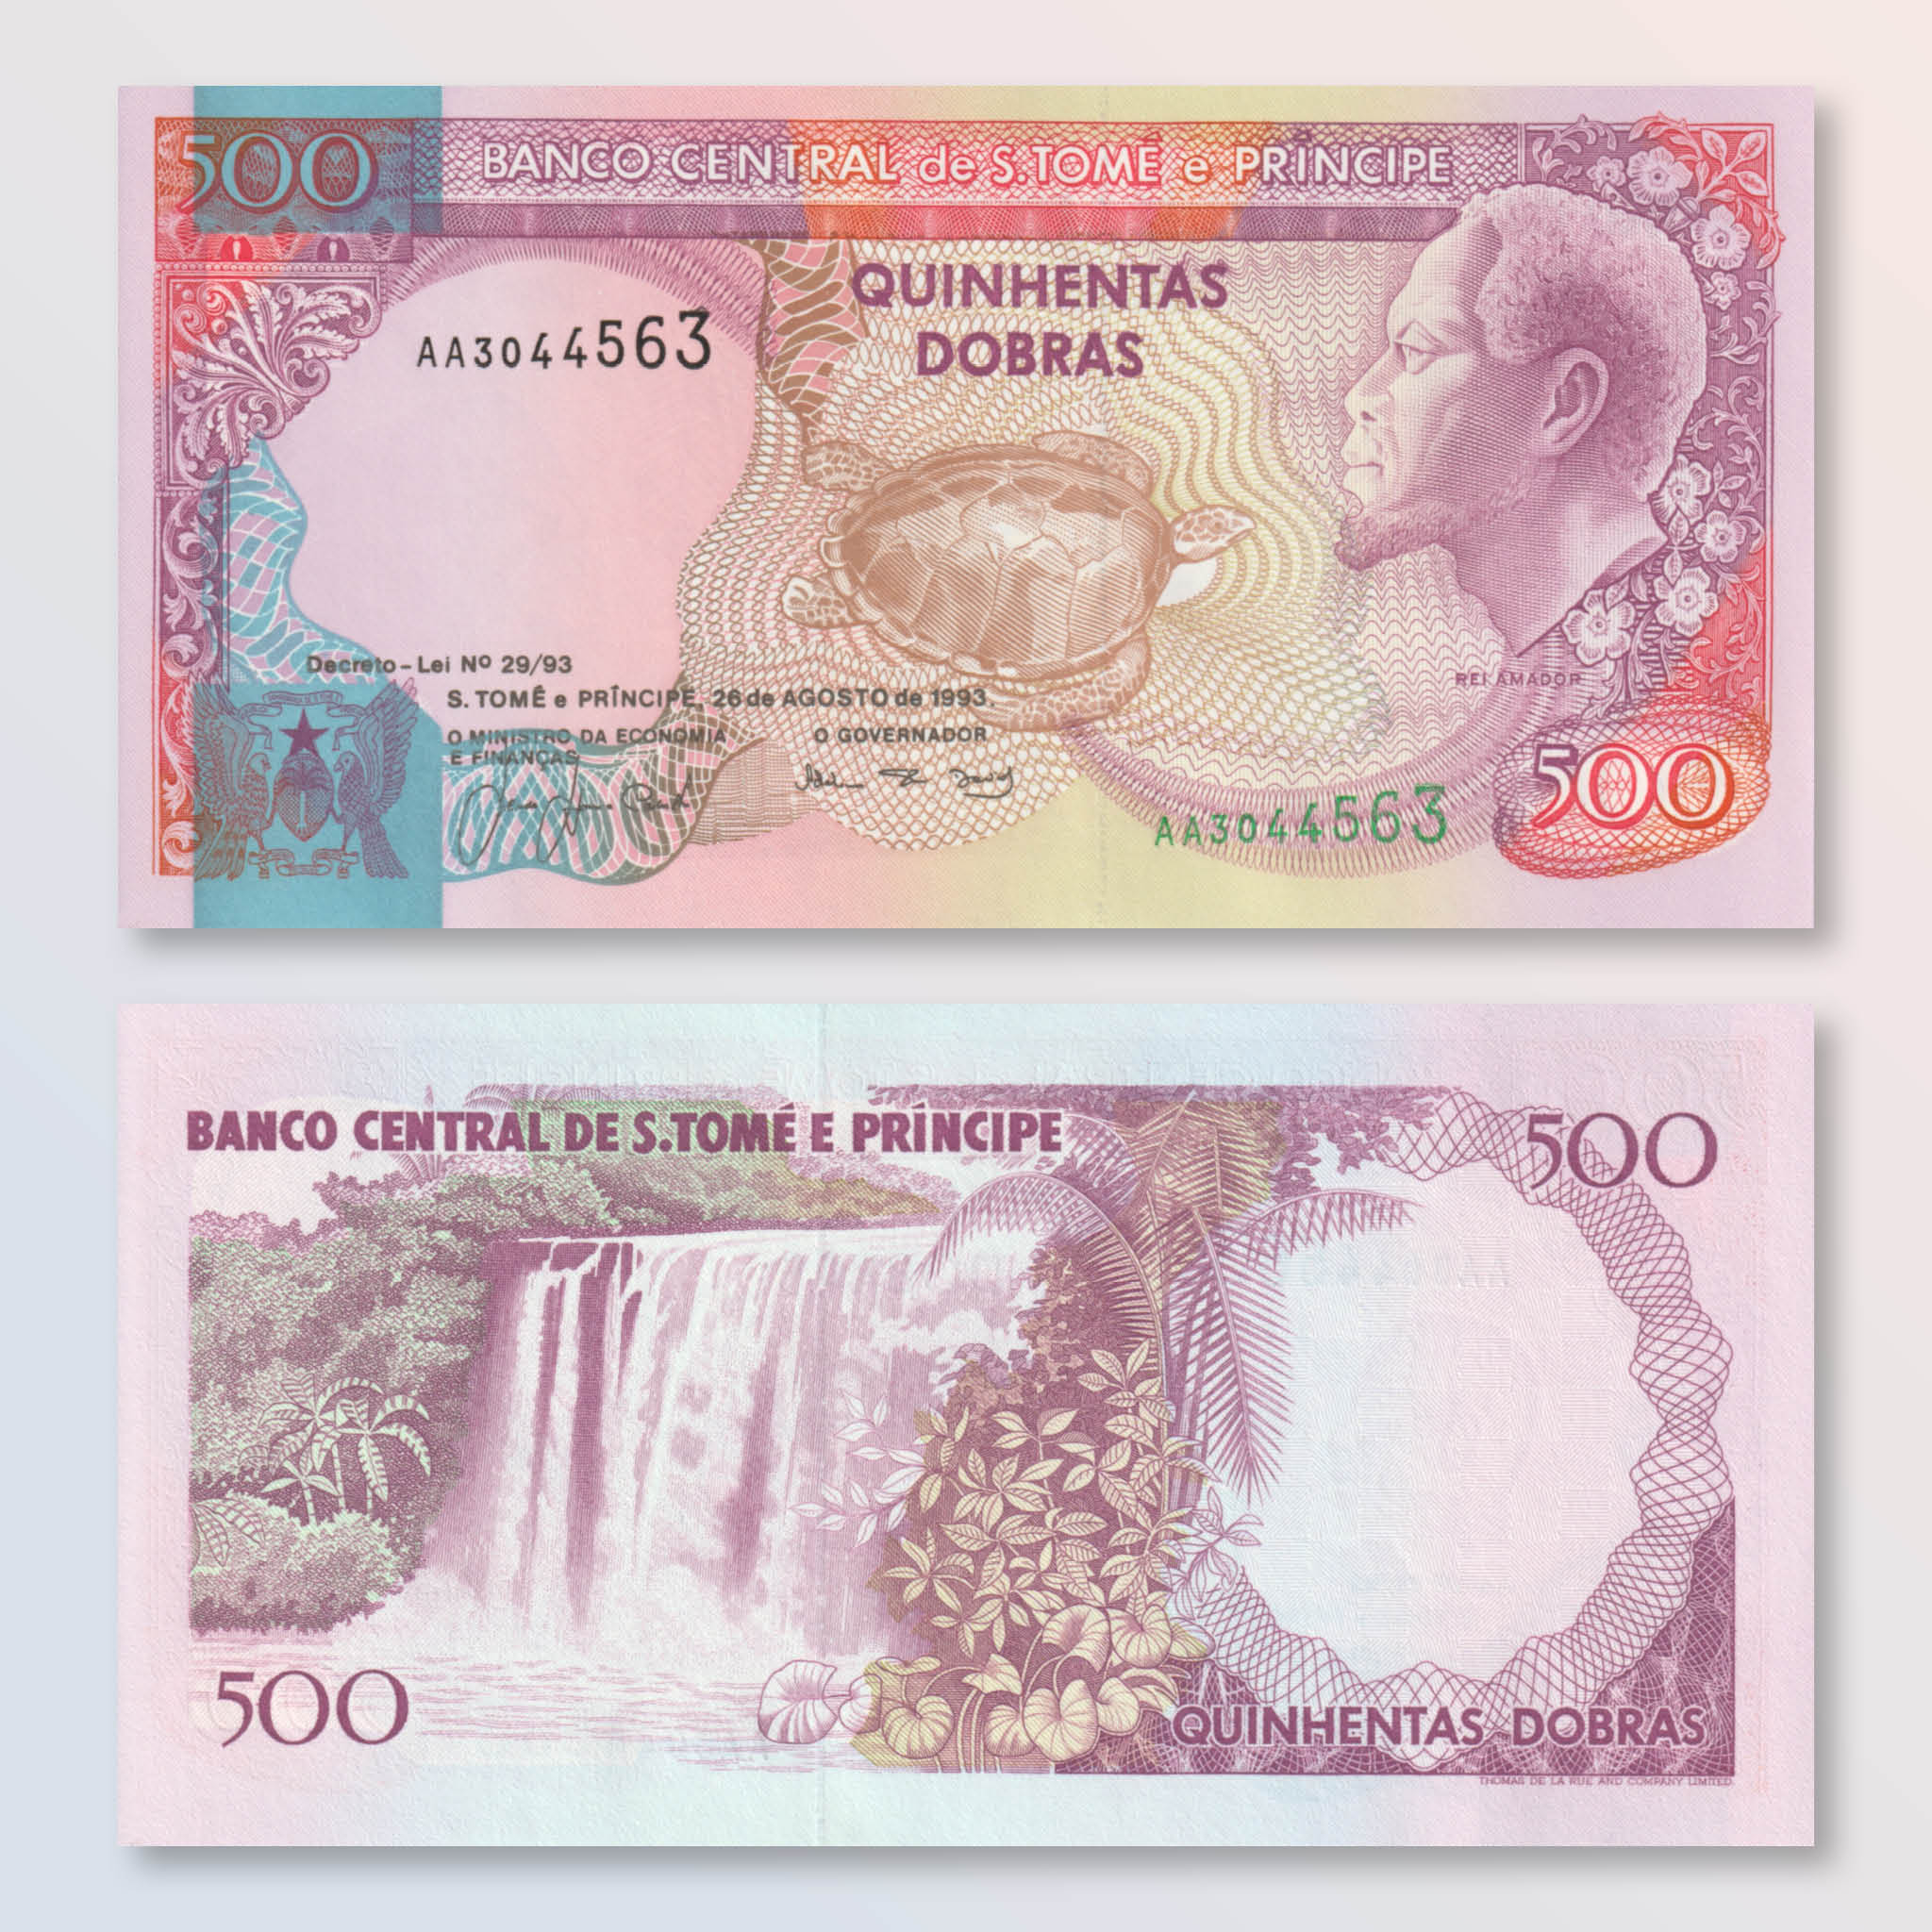 São Tomé & Príncipe 500 Dobras, 1993, B301a, P63, UNC - Robert's World Money - World Banknotes